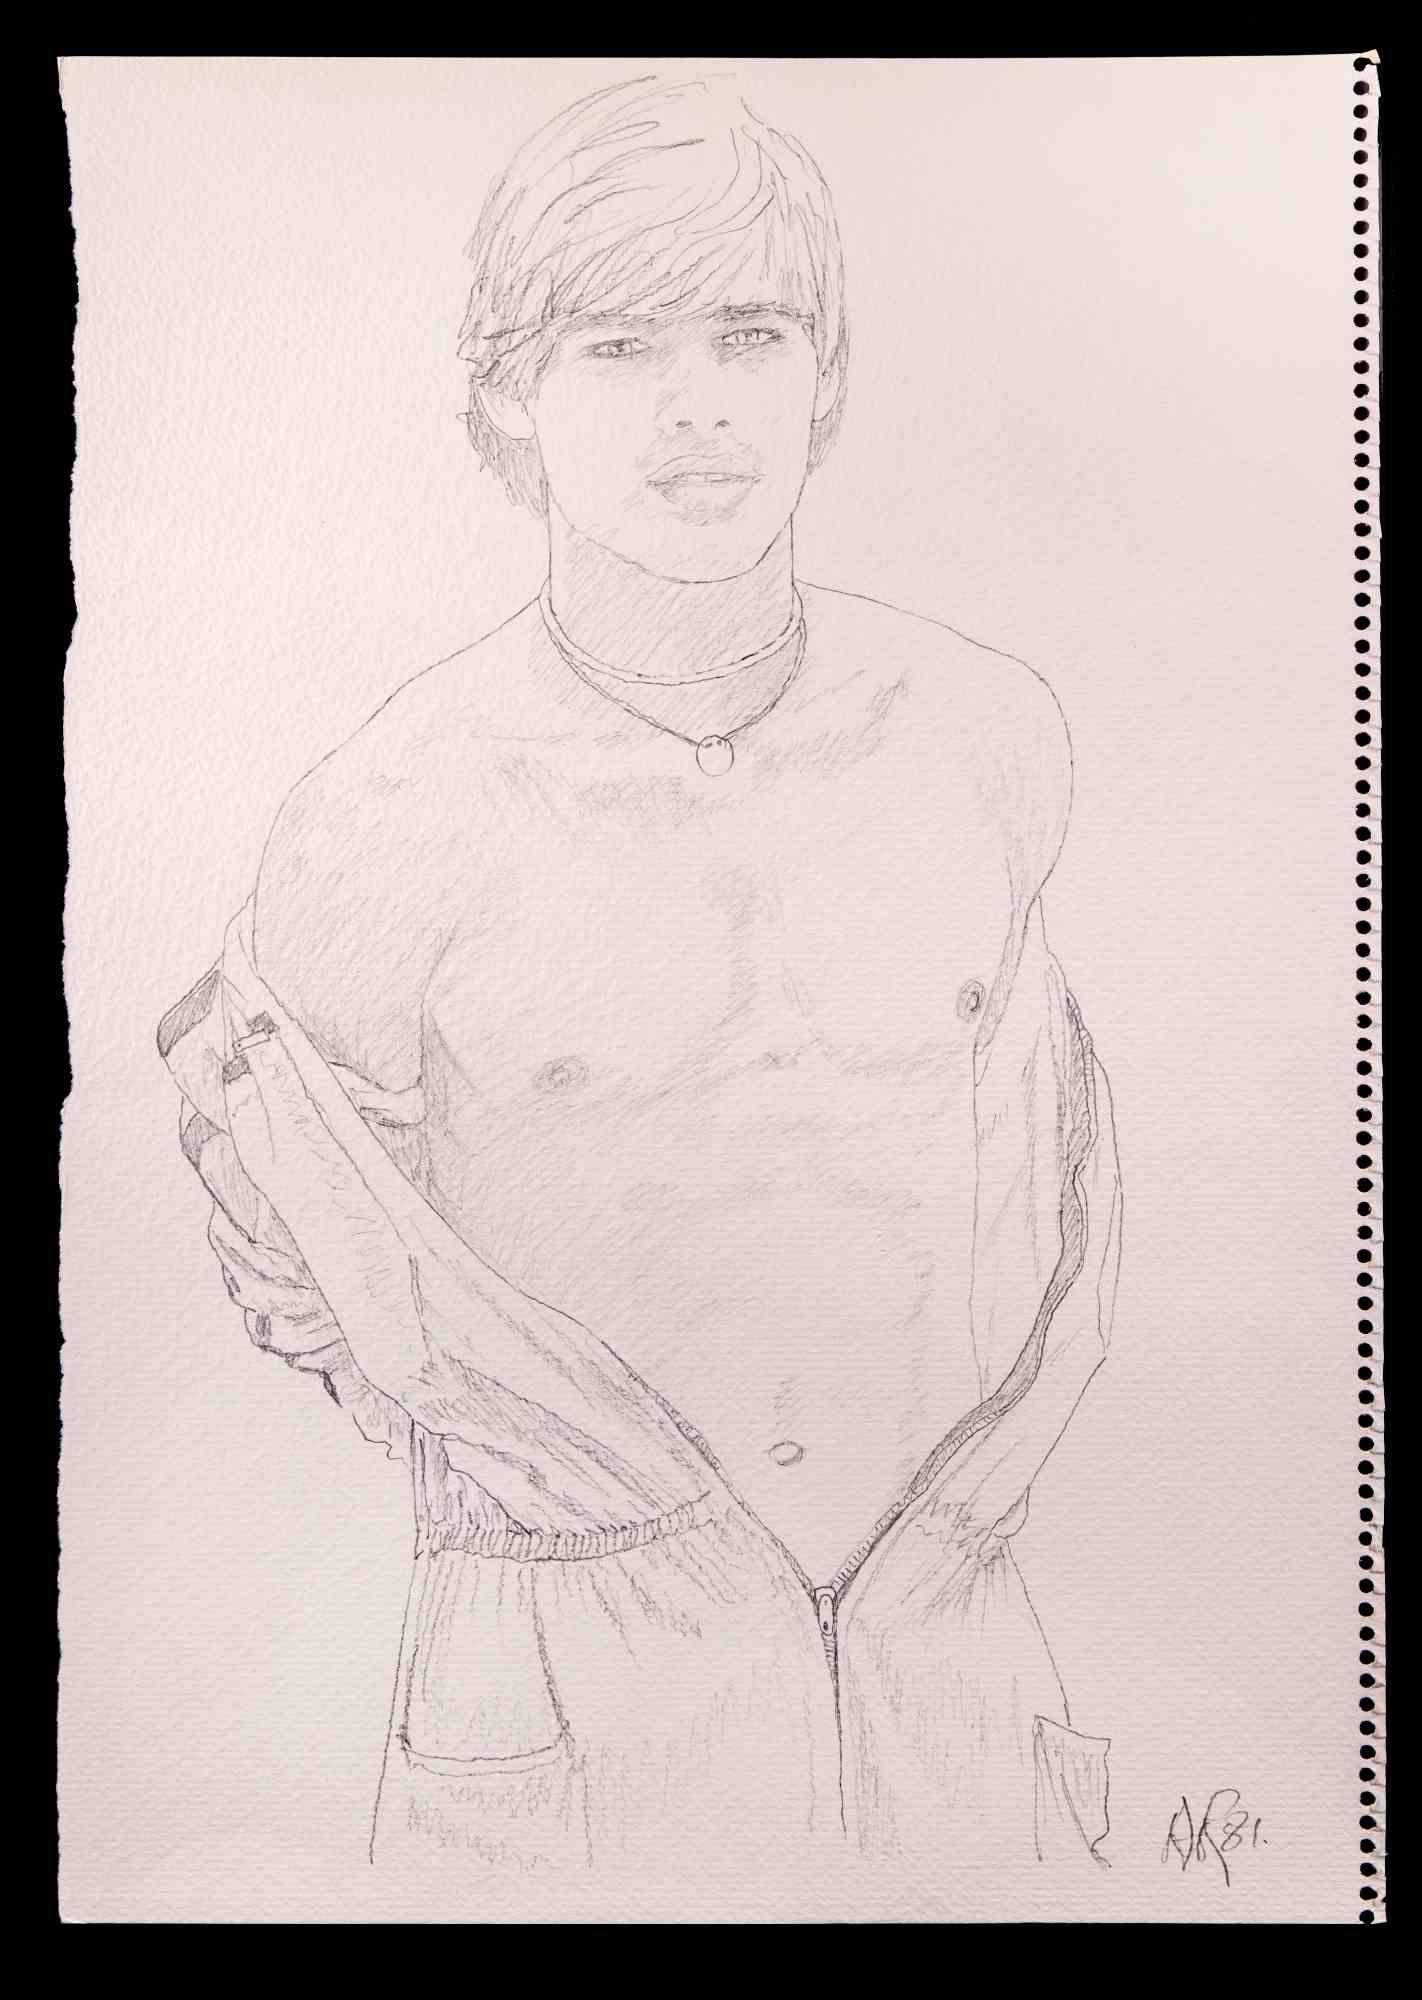 Porträt eines Jungen  ist eine Originalzeichnung mit Bleistift von Anthony Roaland aus dem Jahr 1981. Vom Künstler am unteren rechten Rand handsigniert und datiert. 

Der Künstler stellt ein zartes, schönes männliches Porträt in einem harmonischen